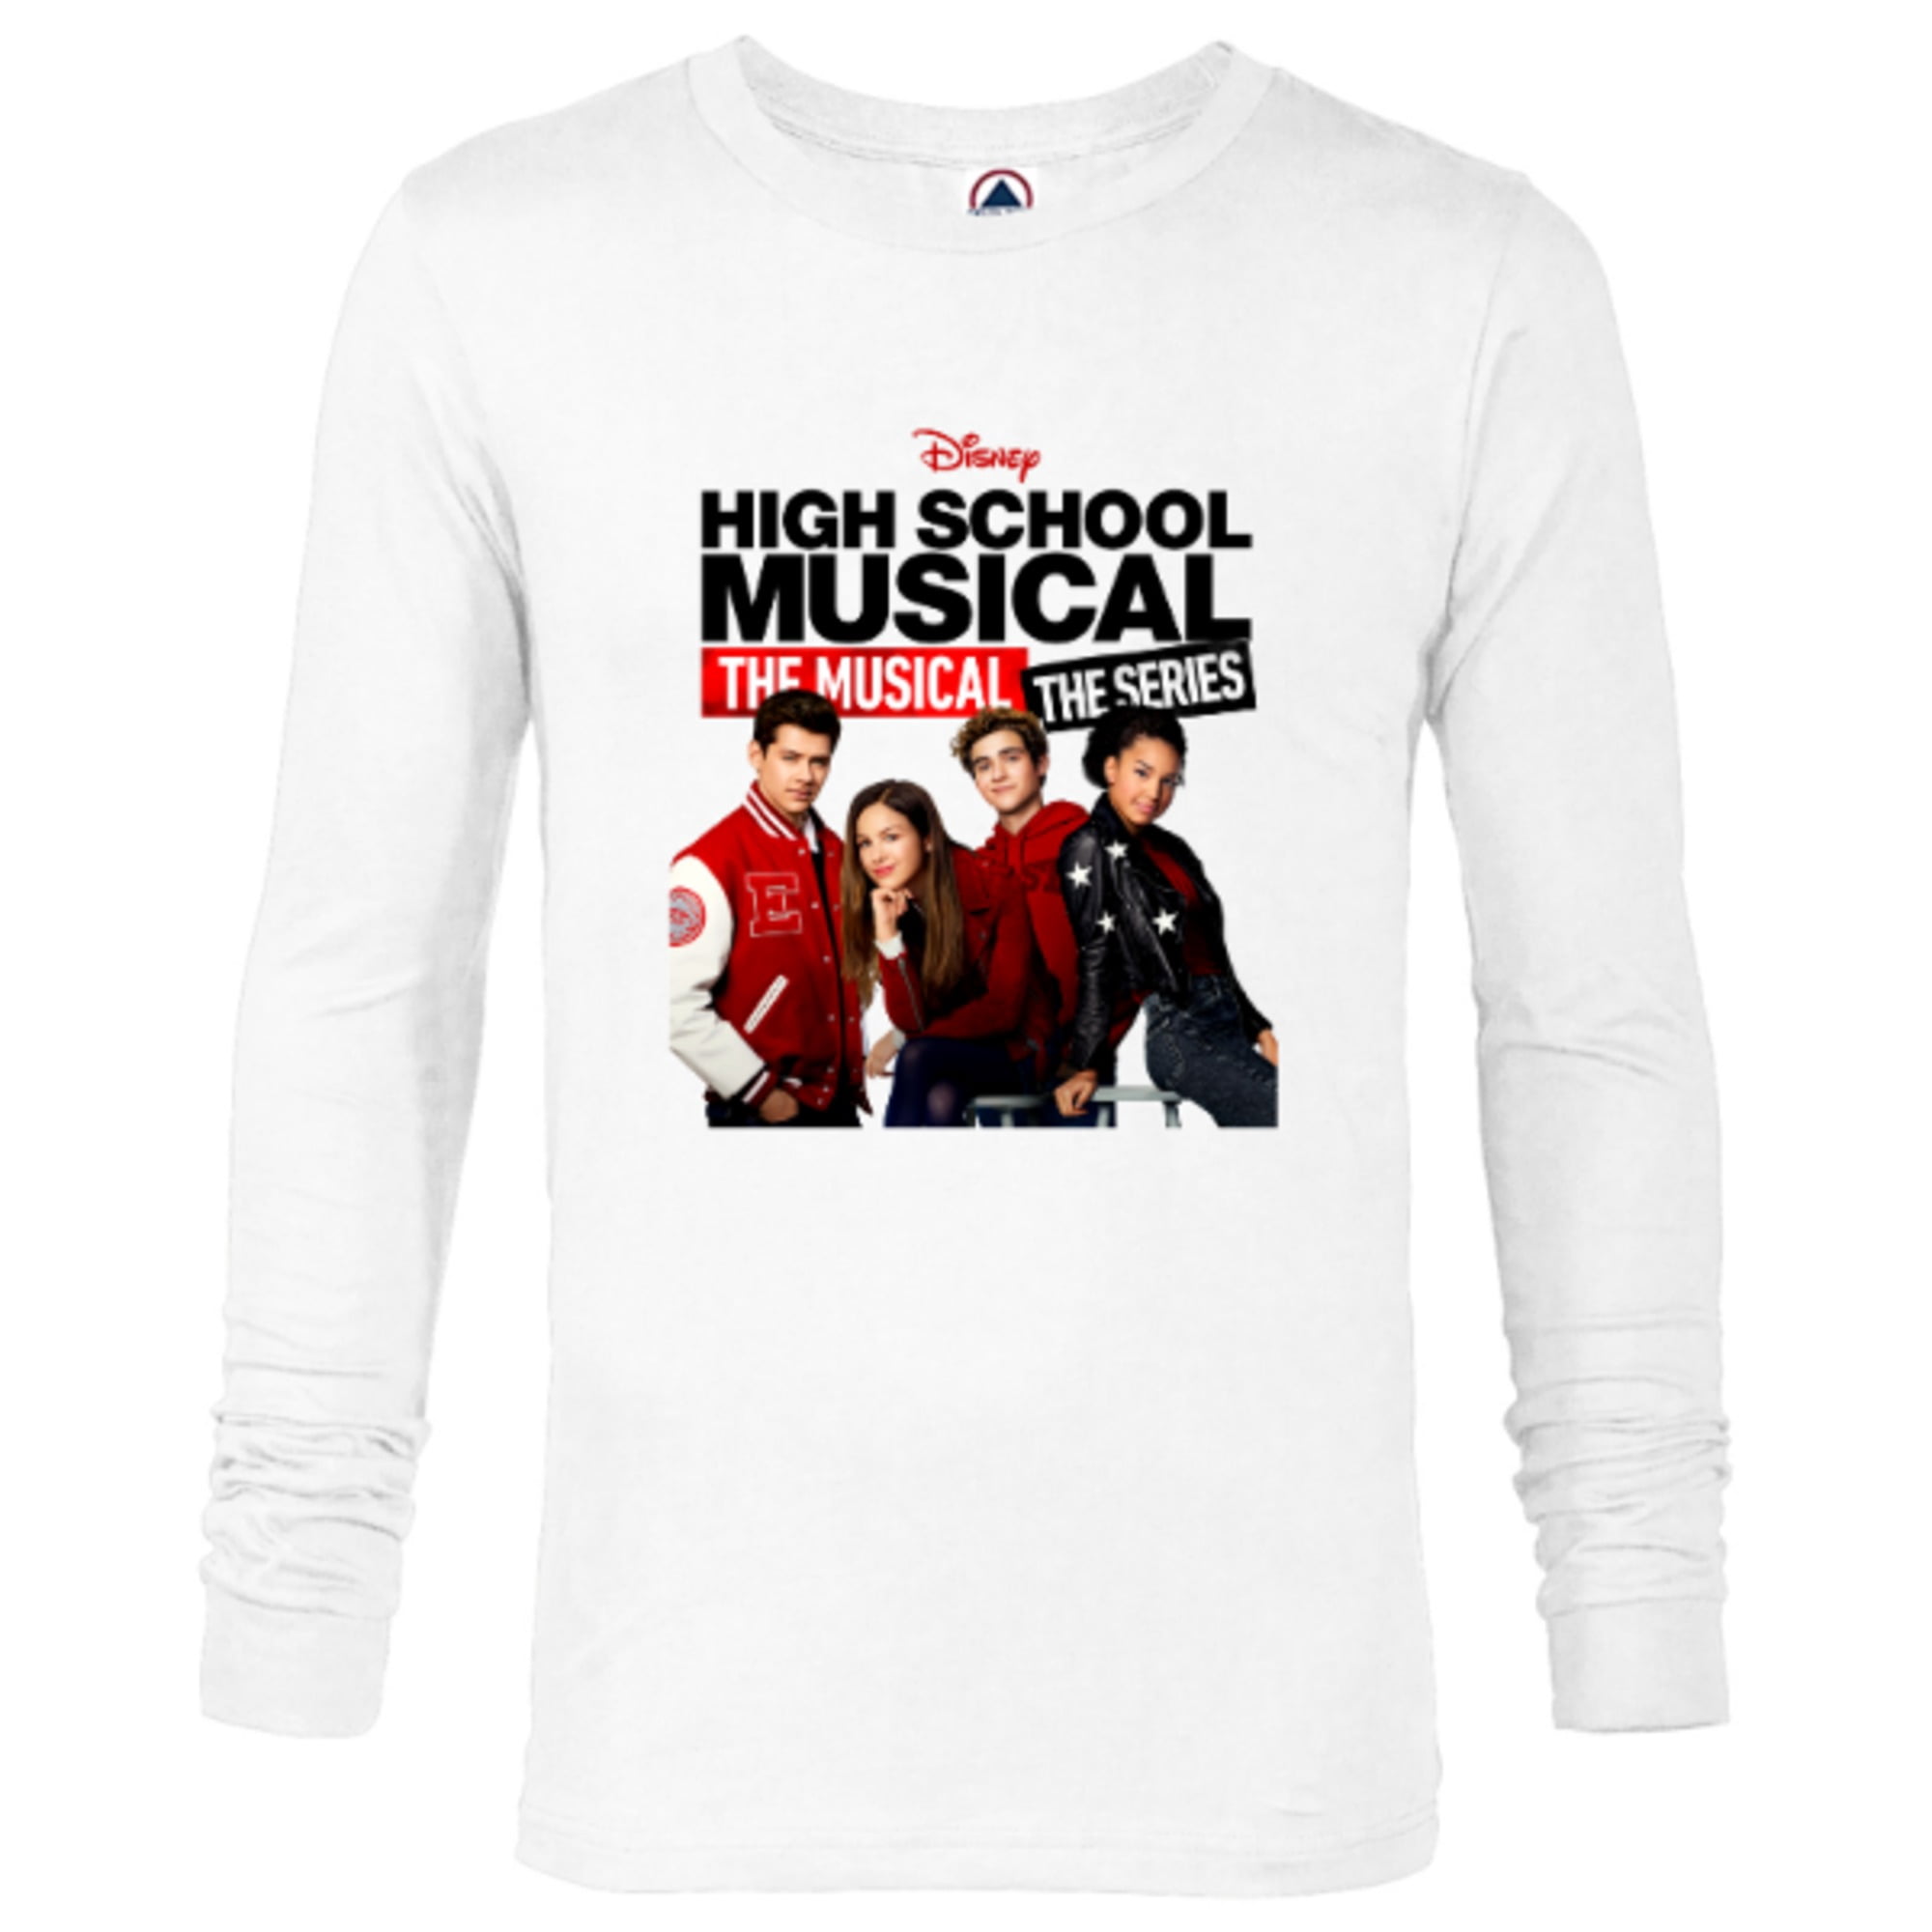  Mens High School Musical Shirt - High School Musical